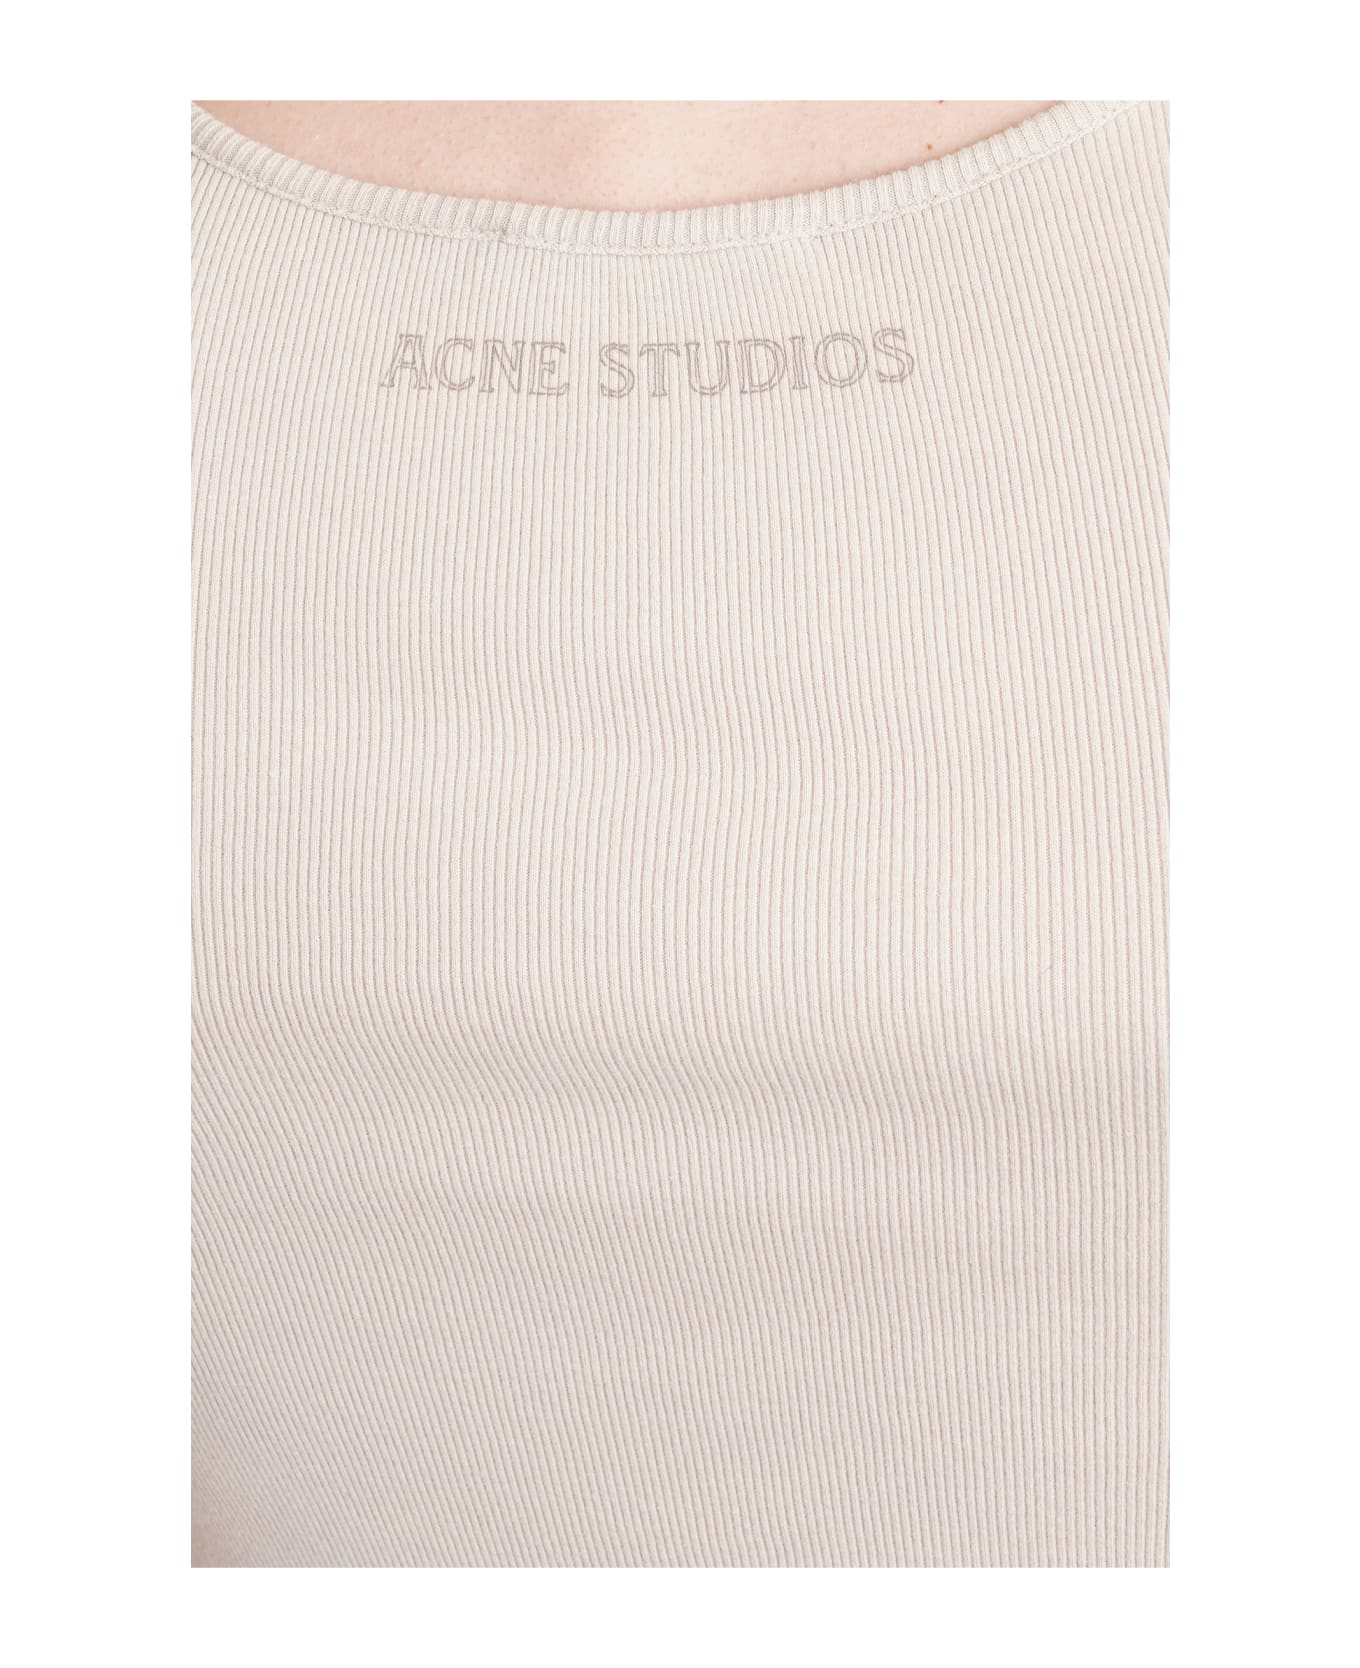 Acne Studios Tank Top In Beige Cotton - beige